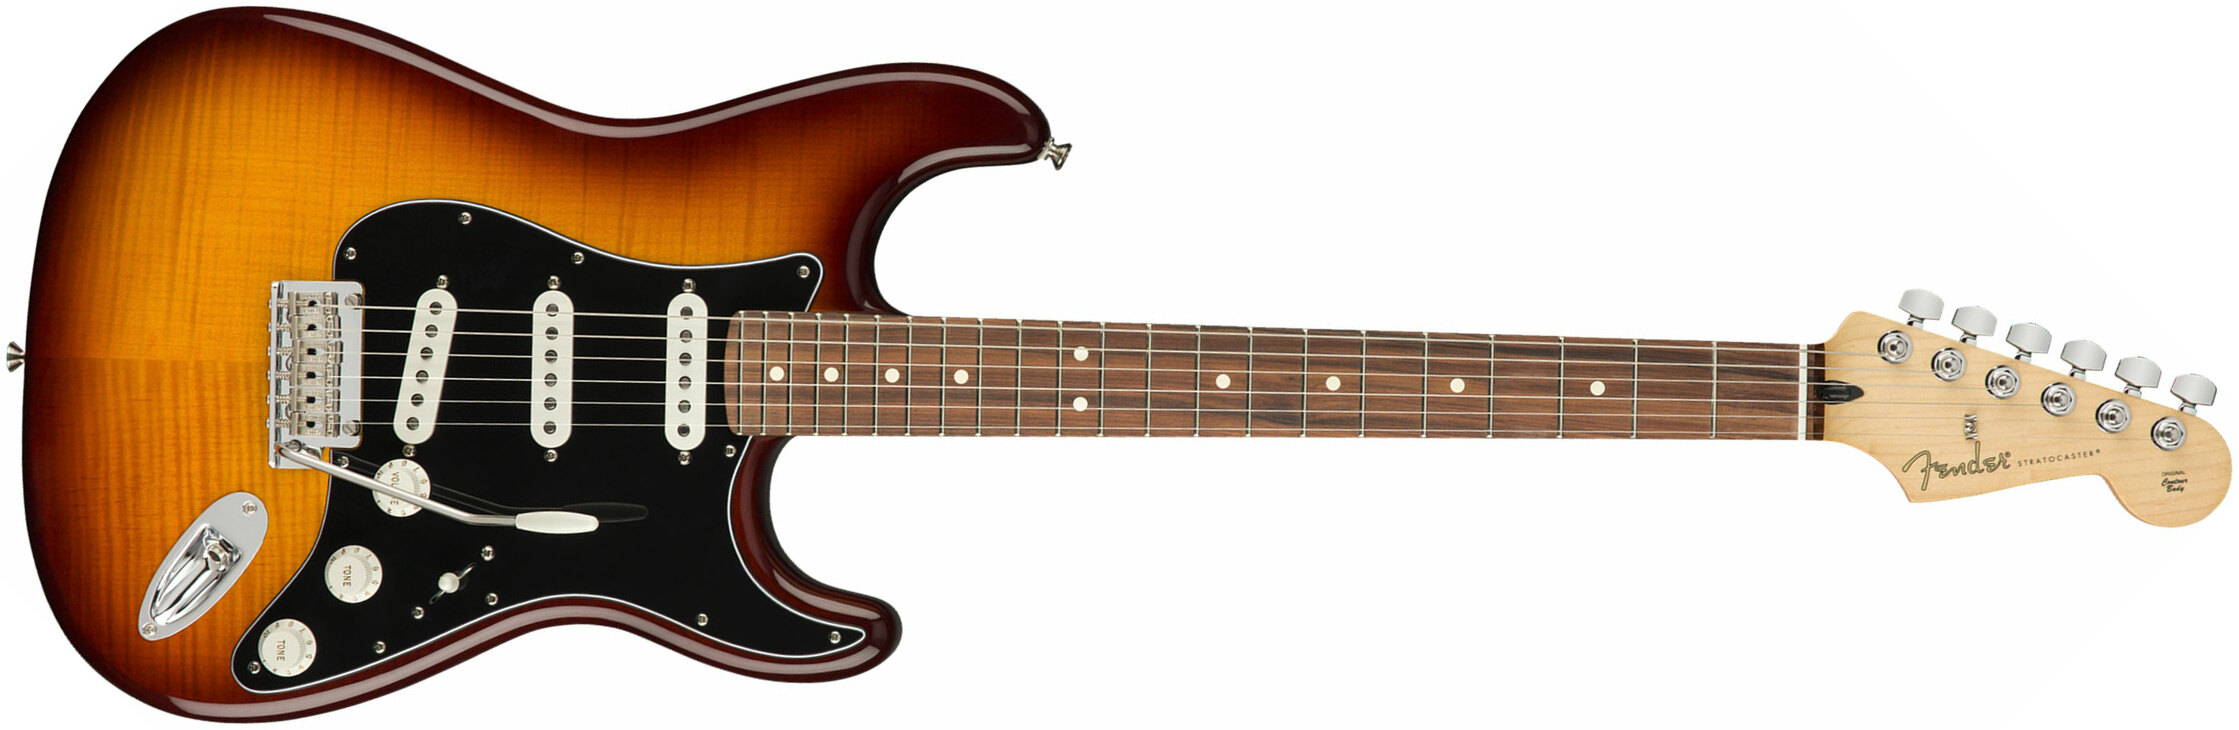 Fender Strat Player Plus Top Mex 3s Trem Pf - Tobacco Burst - Guitare Électrique Forme Str - Main picture